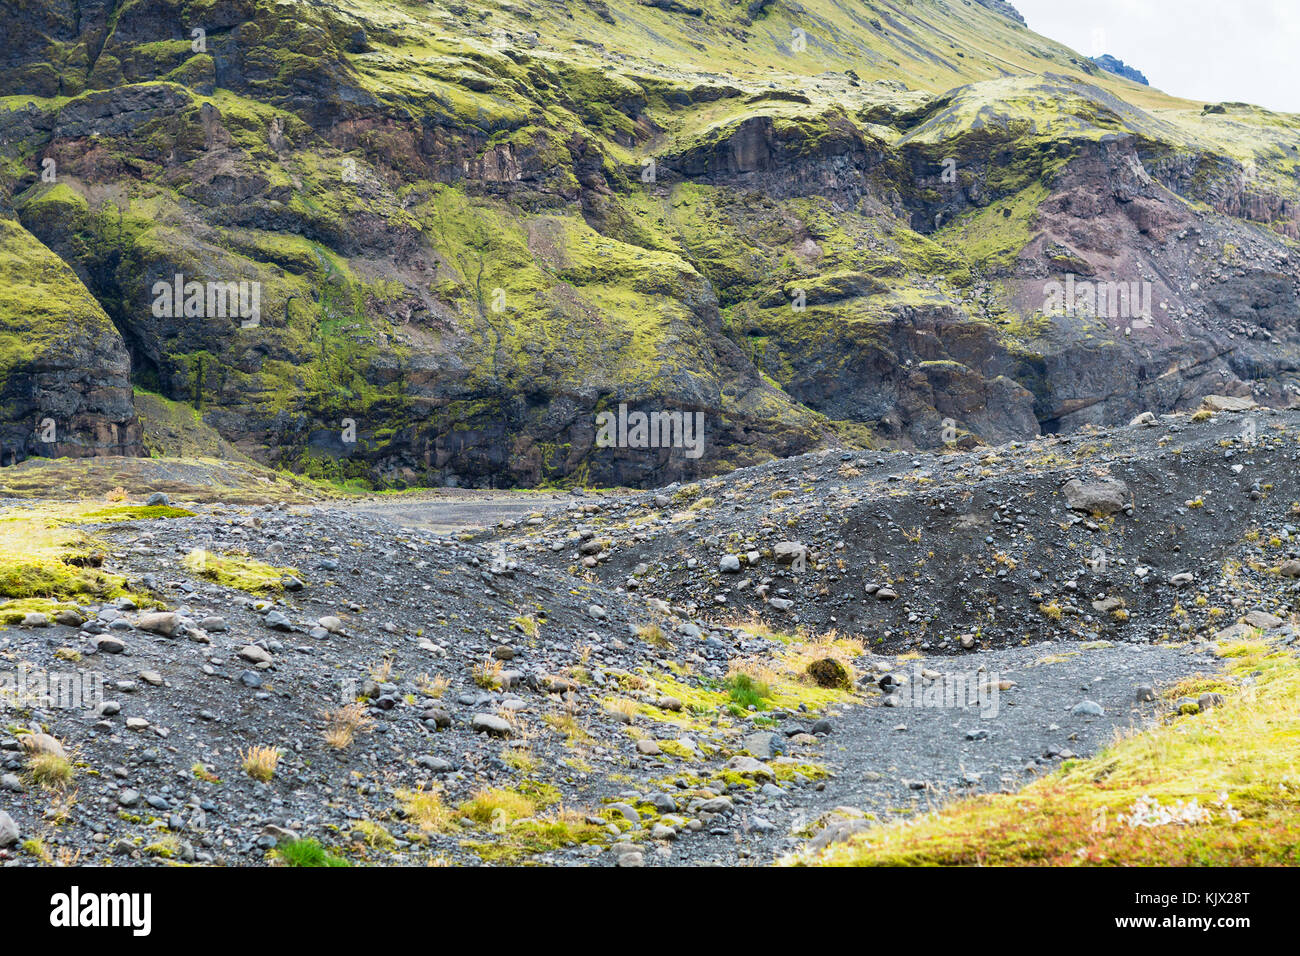 Reisen nach Island - vulkanischen Hang in der Nähe von solheimajokull Gletscher (Süd glazialen Zunge des myrdalsjökull Ice Cap) in Katla Geopark auf isländischen Stockfoto